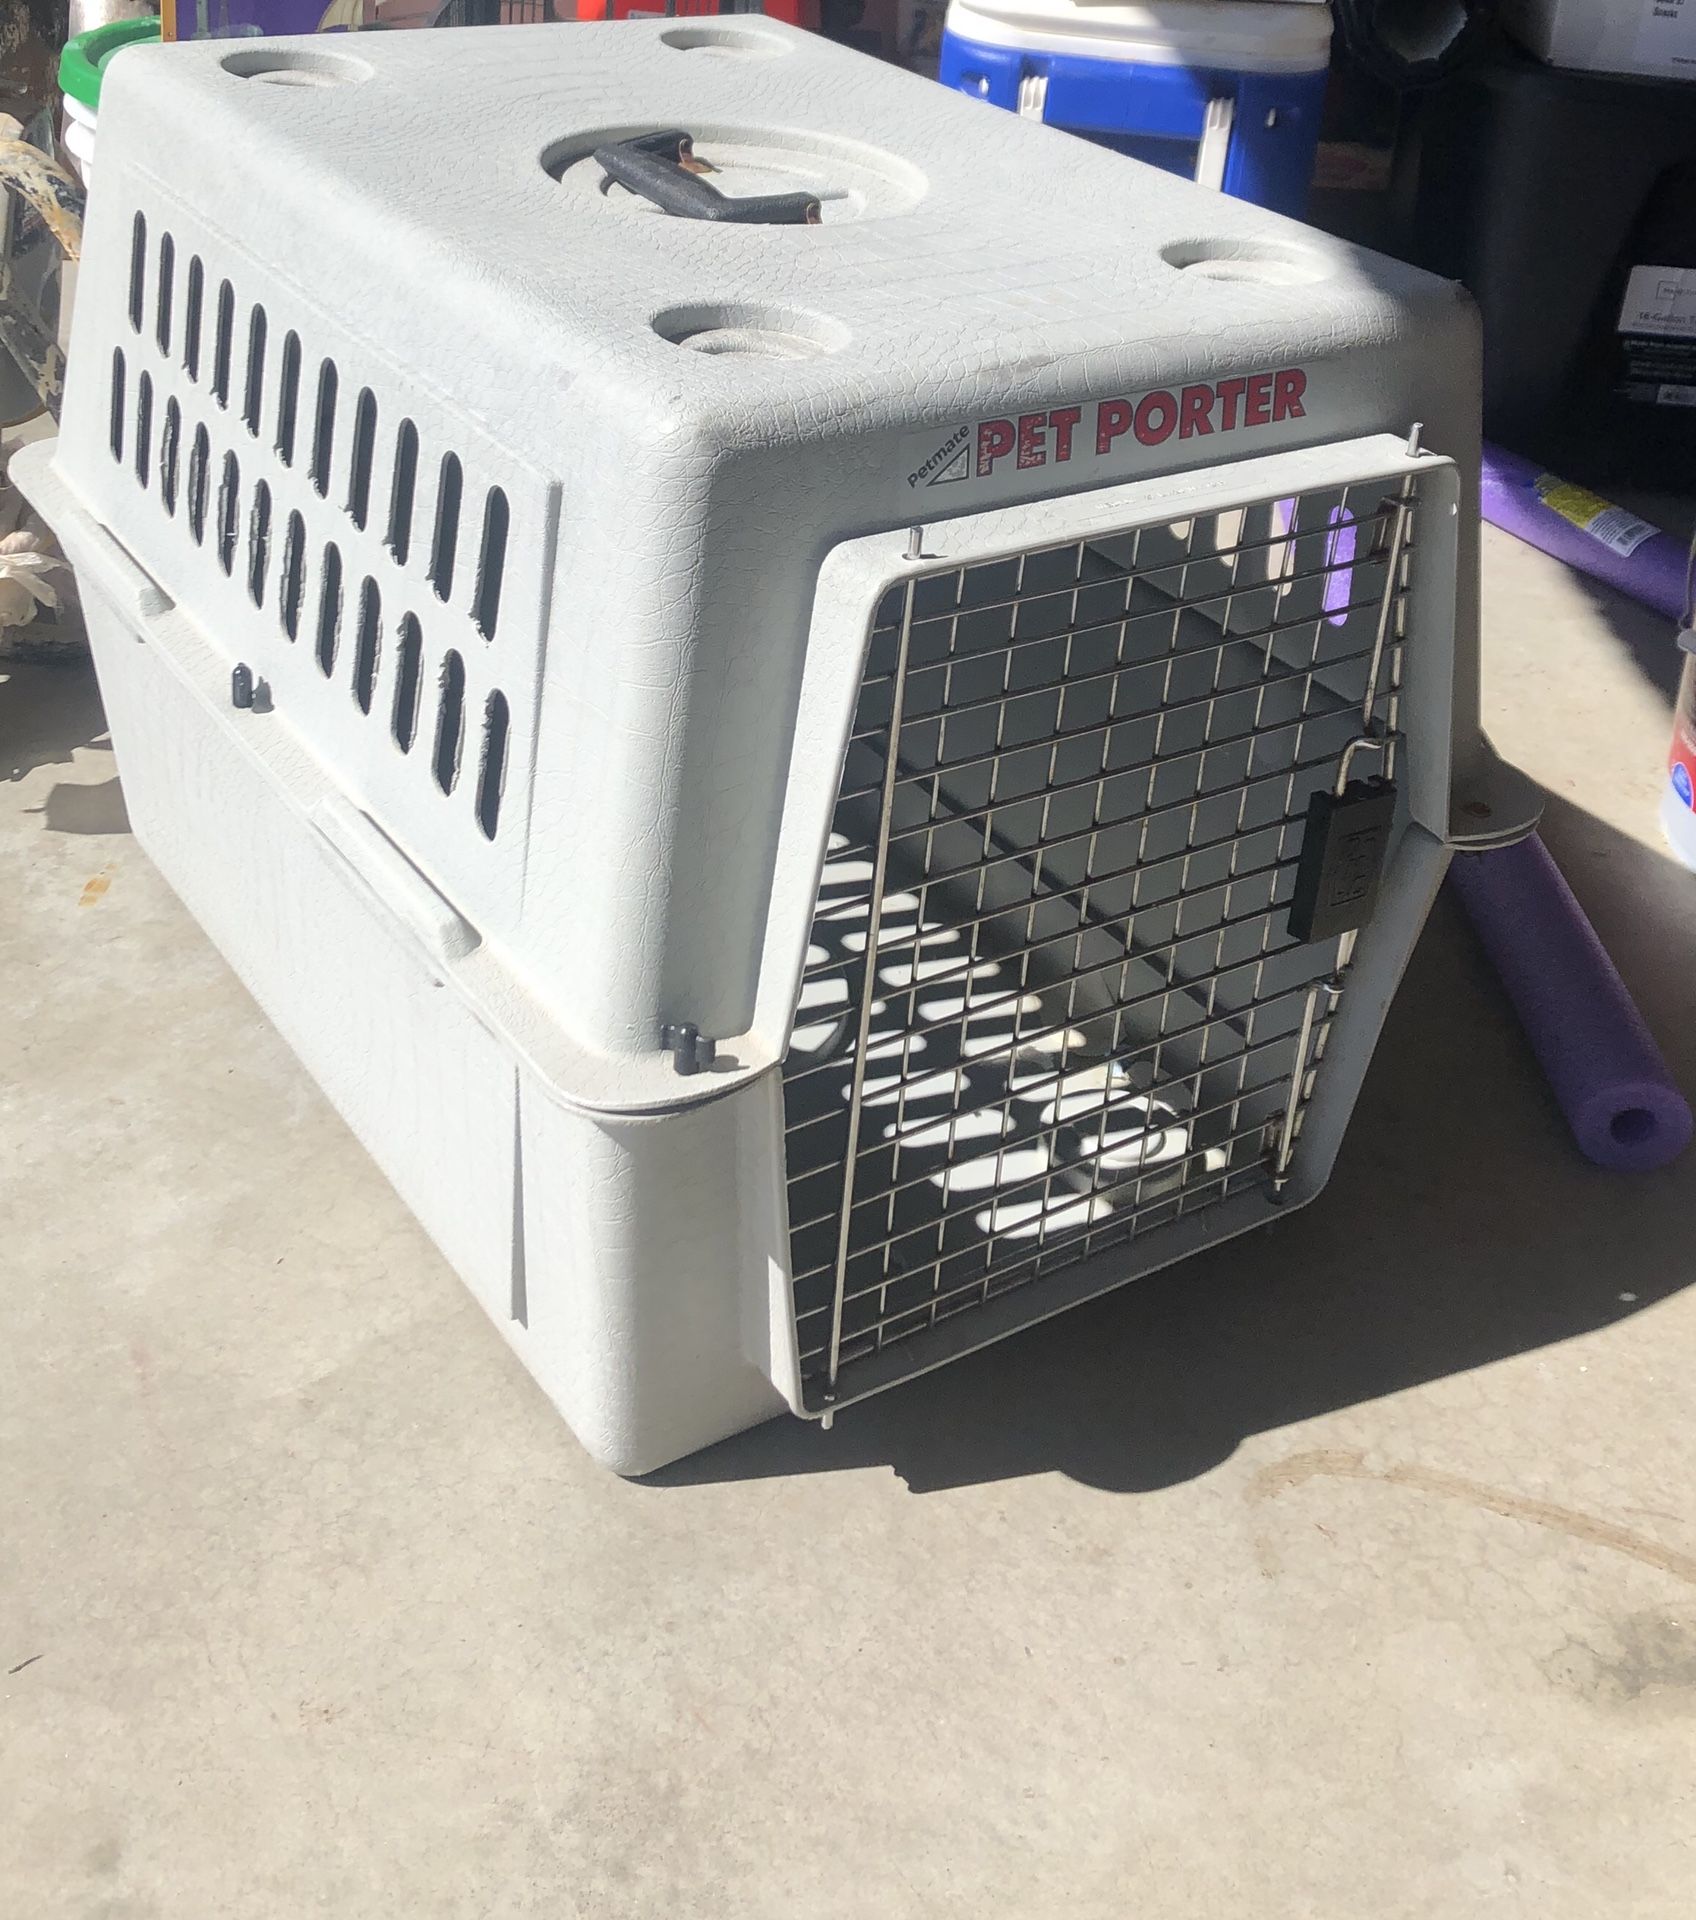 Pet taxi dog crate - 20”W x 19”H x 27”D